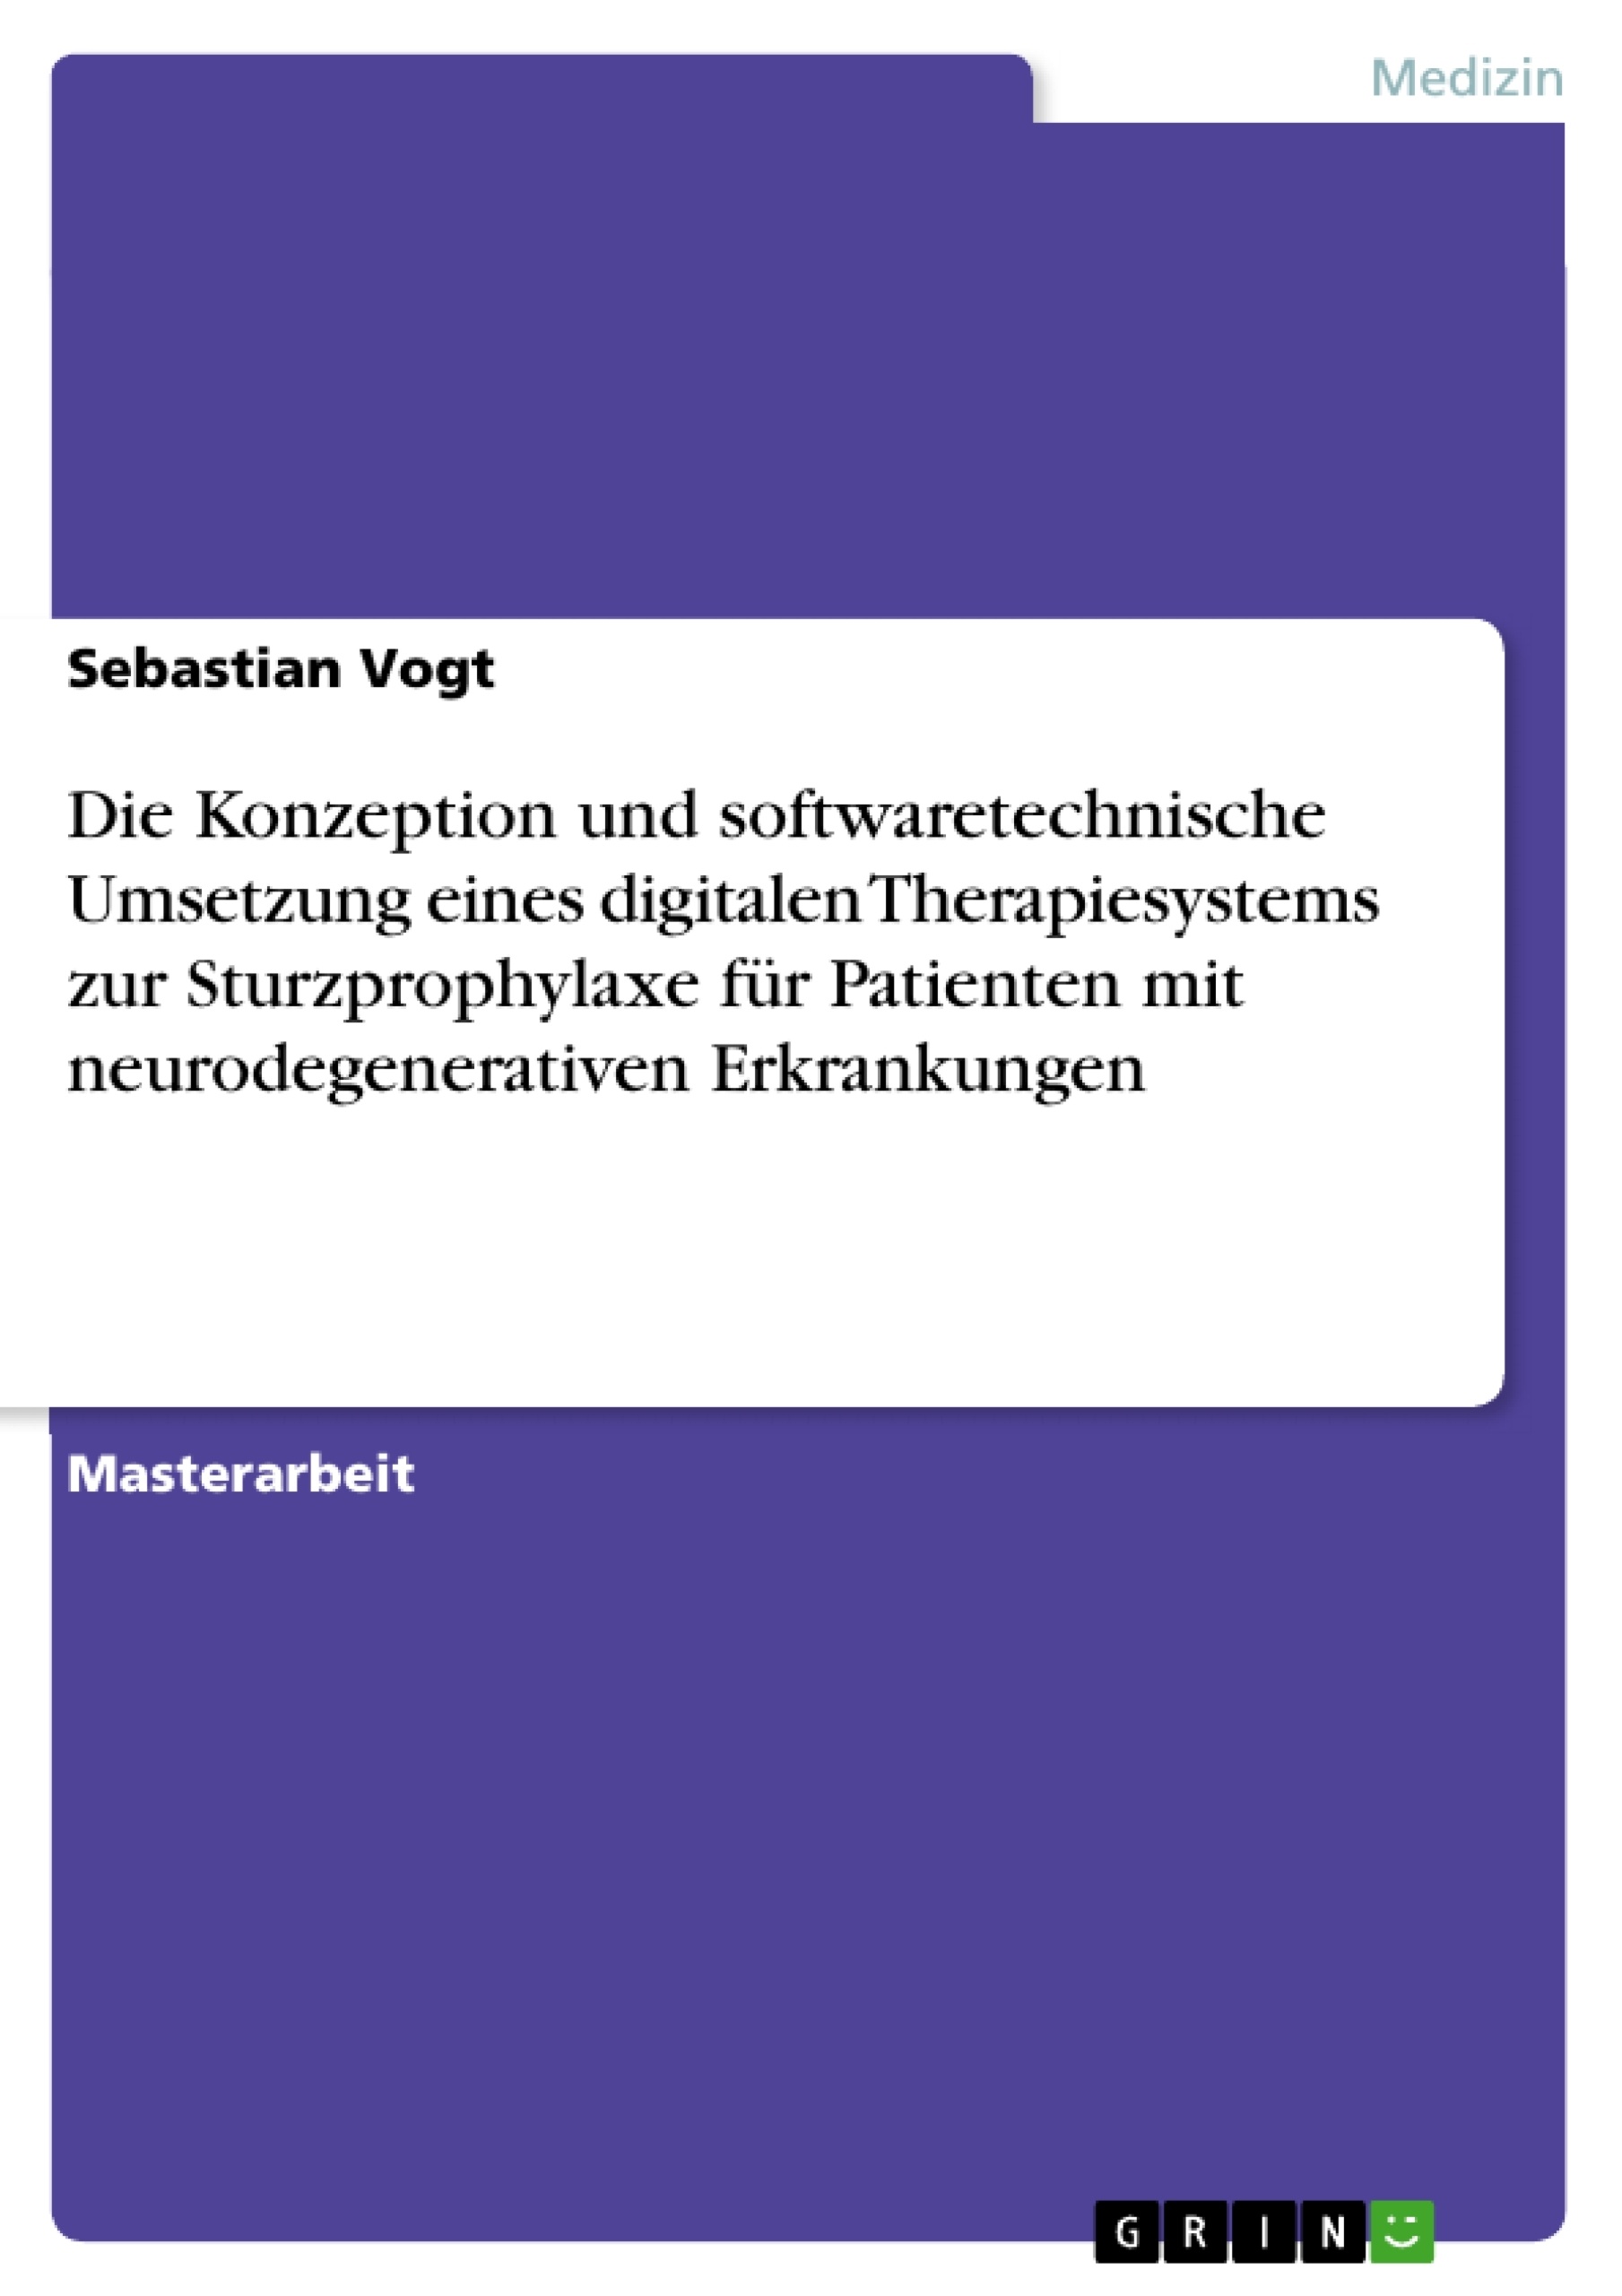 Title: Die Konzeption und softwaretechnische Umsetzung eines digitalen Therapiesystems zur Sturzprophylaxe für Patienten mit neurodegenerativen Erkrankungen